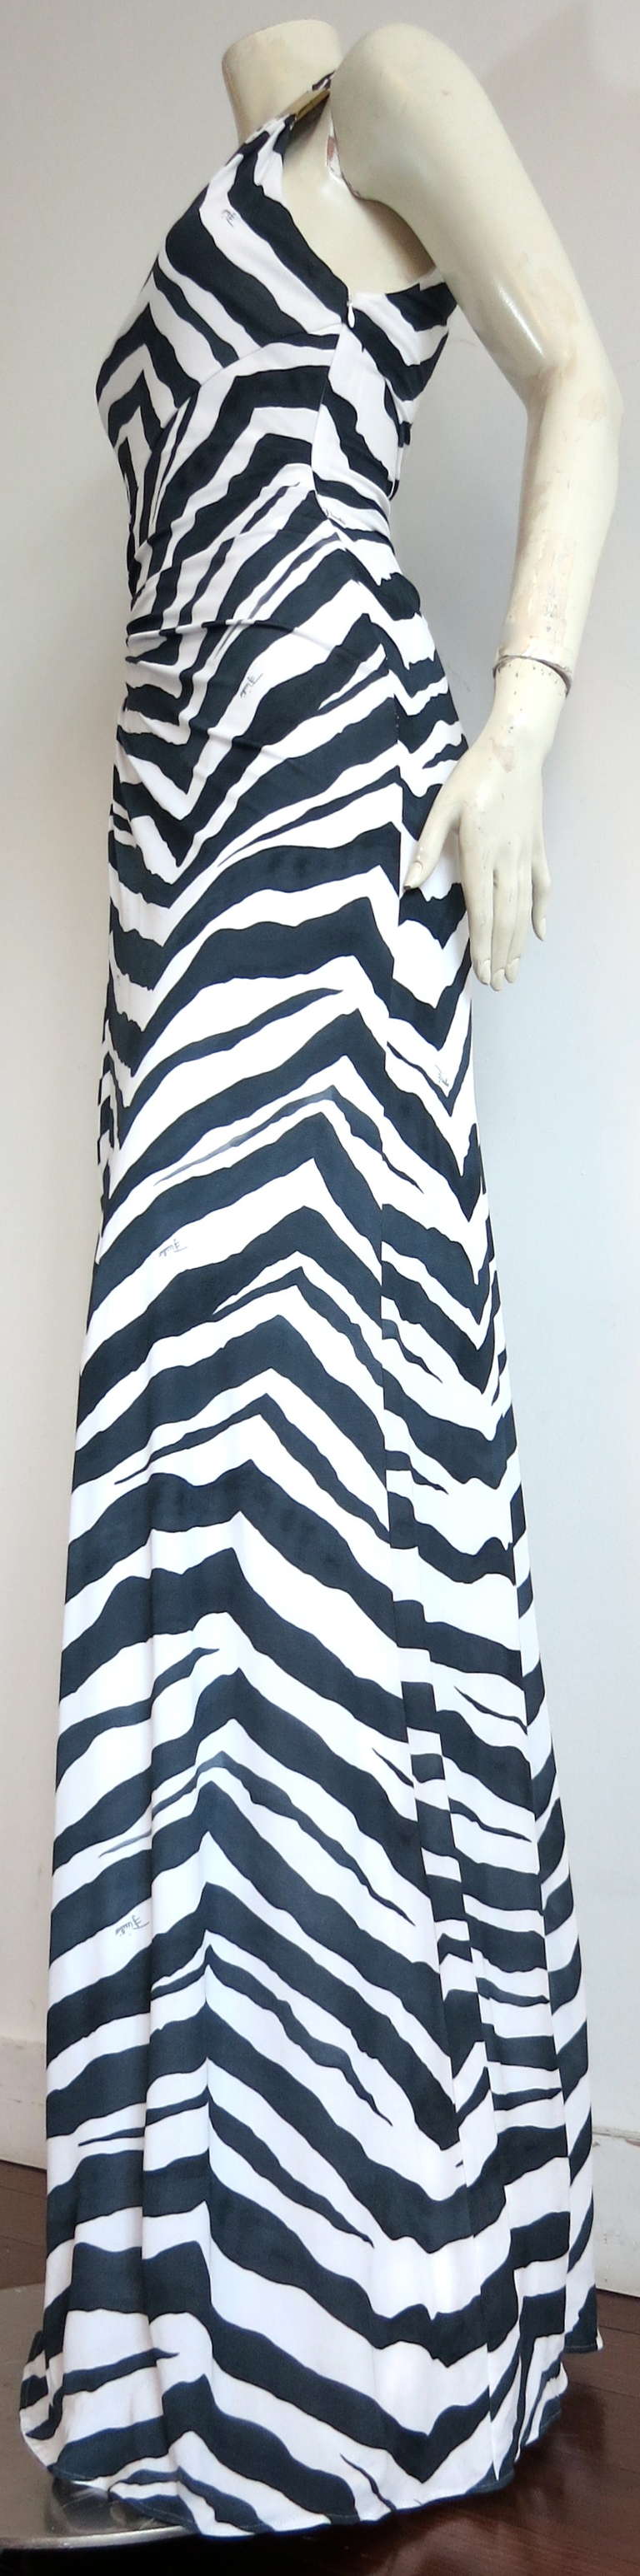 EMILIO PUCCI Signed zebra dress 1